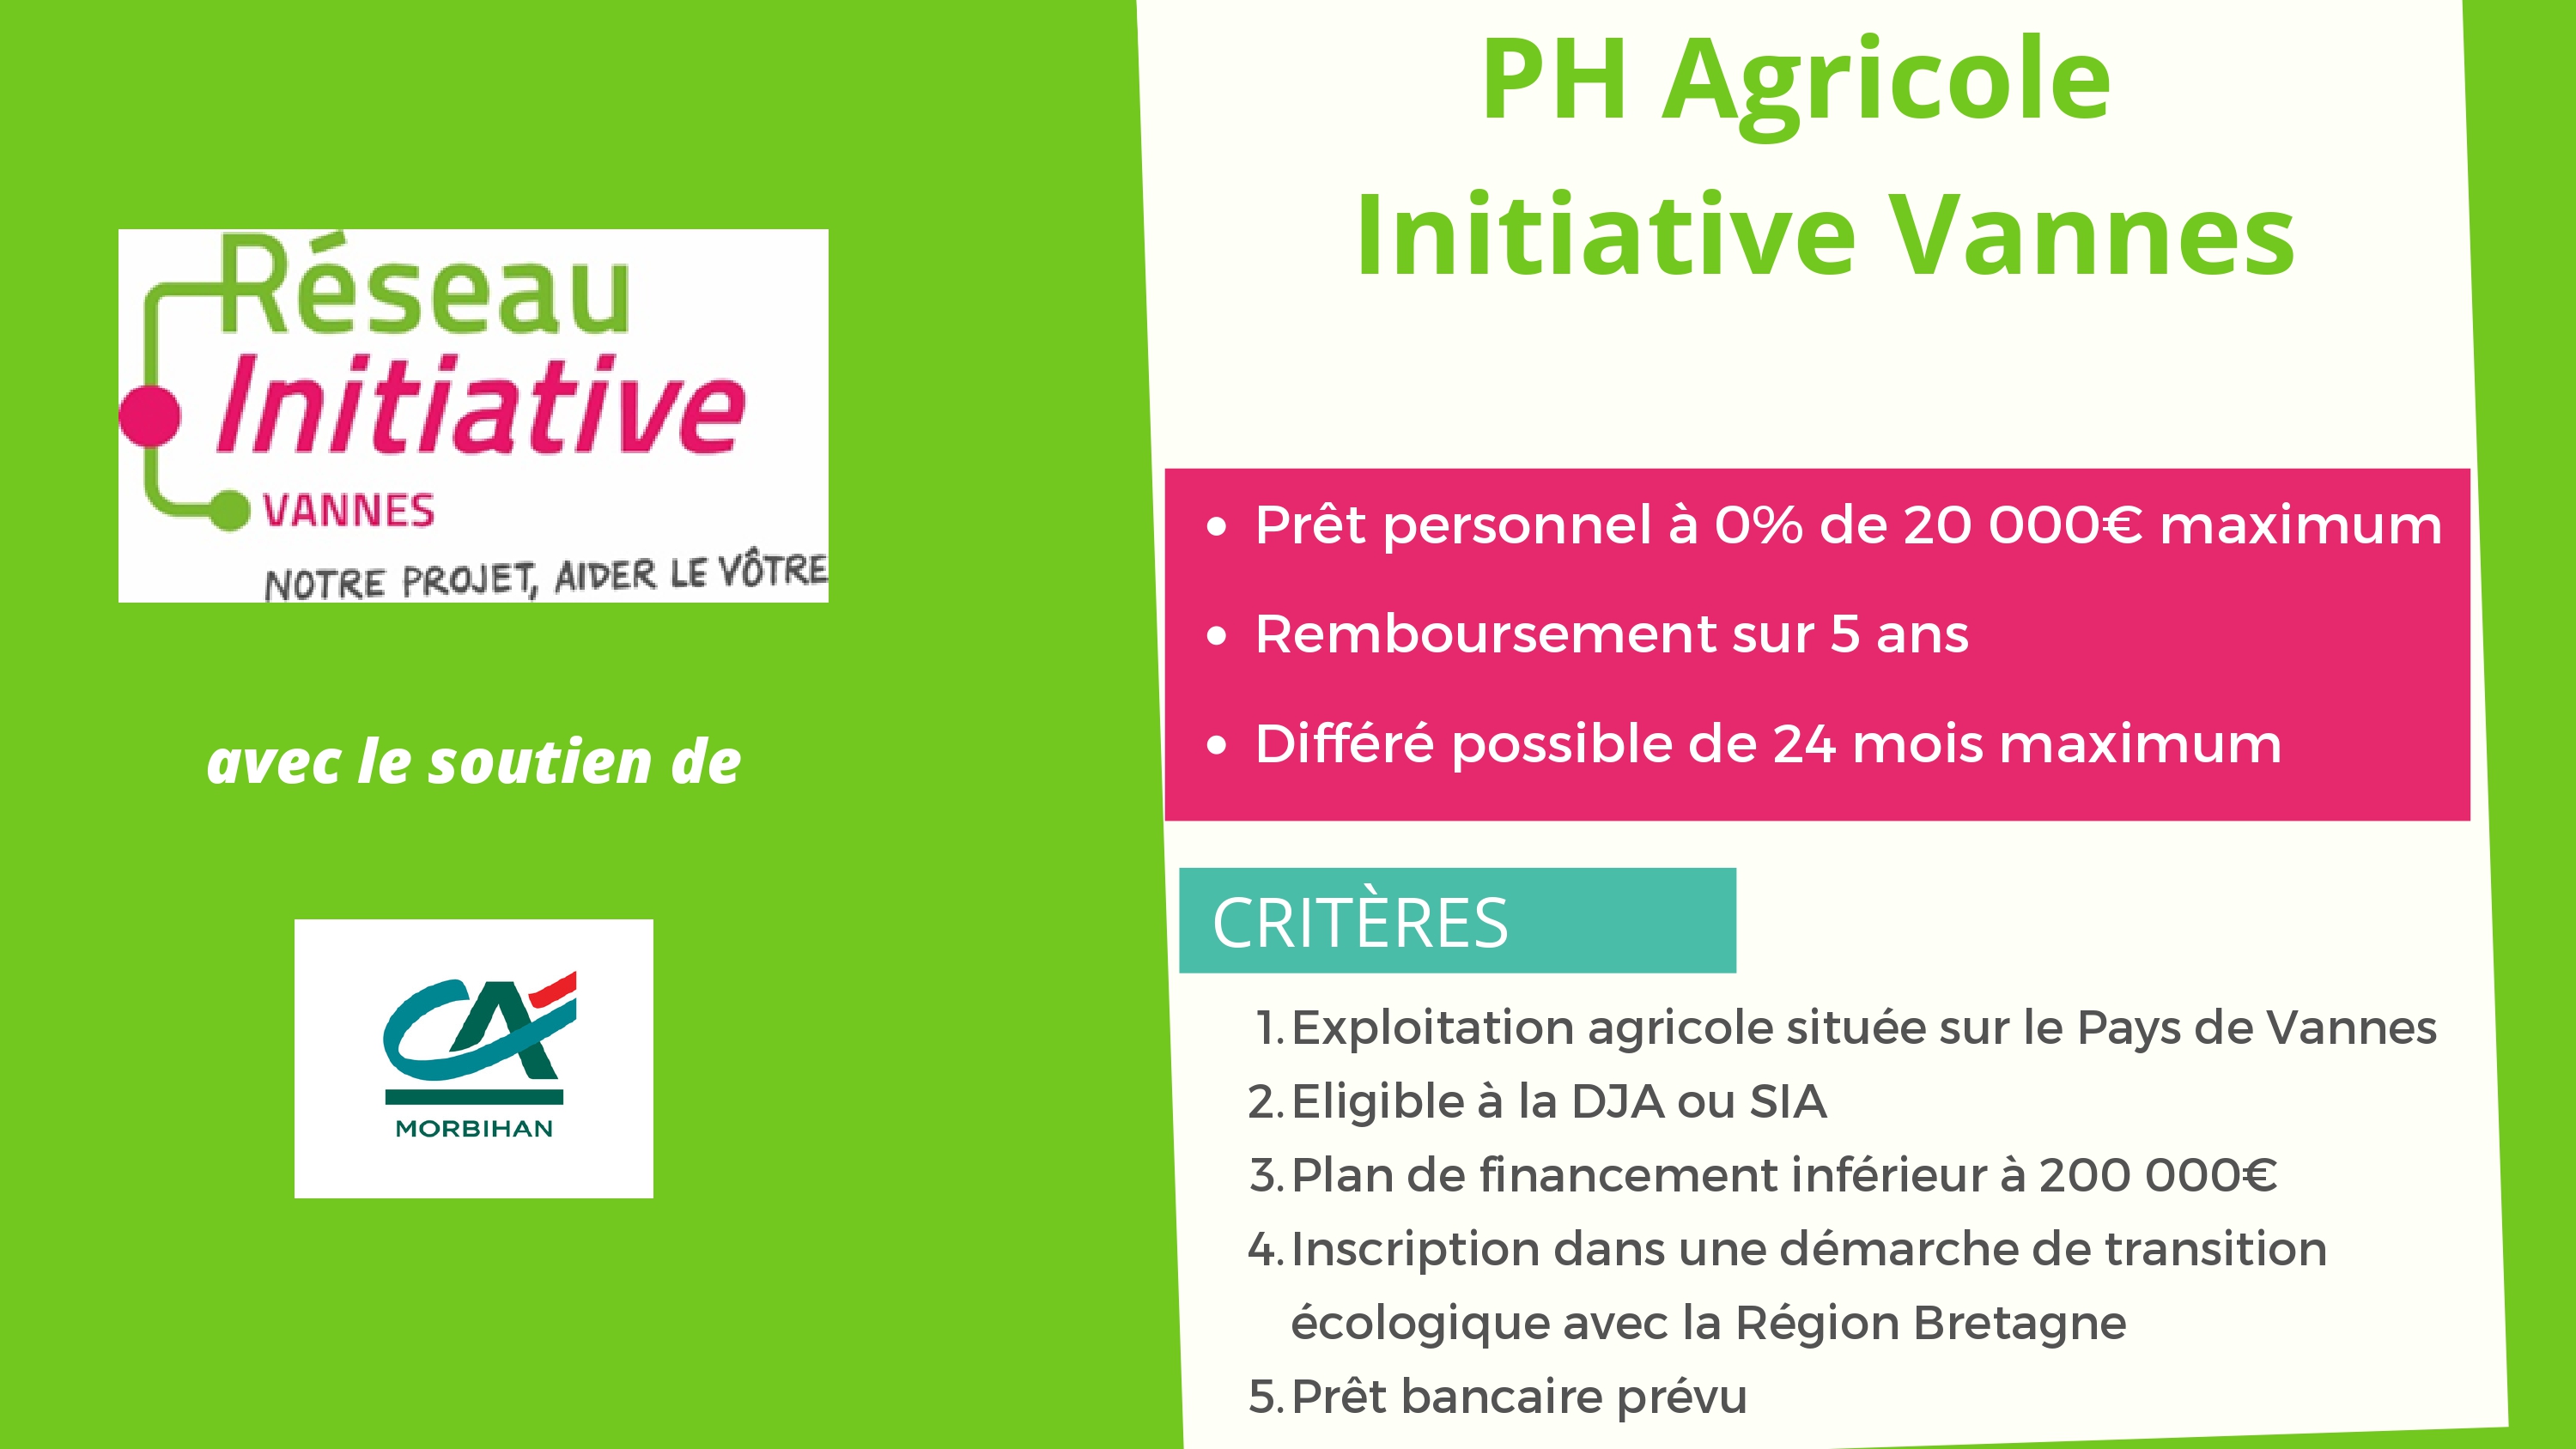 PH Agricole Initiative Vannes